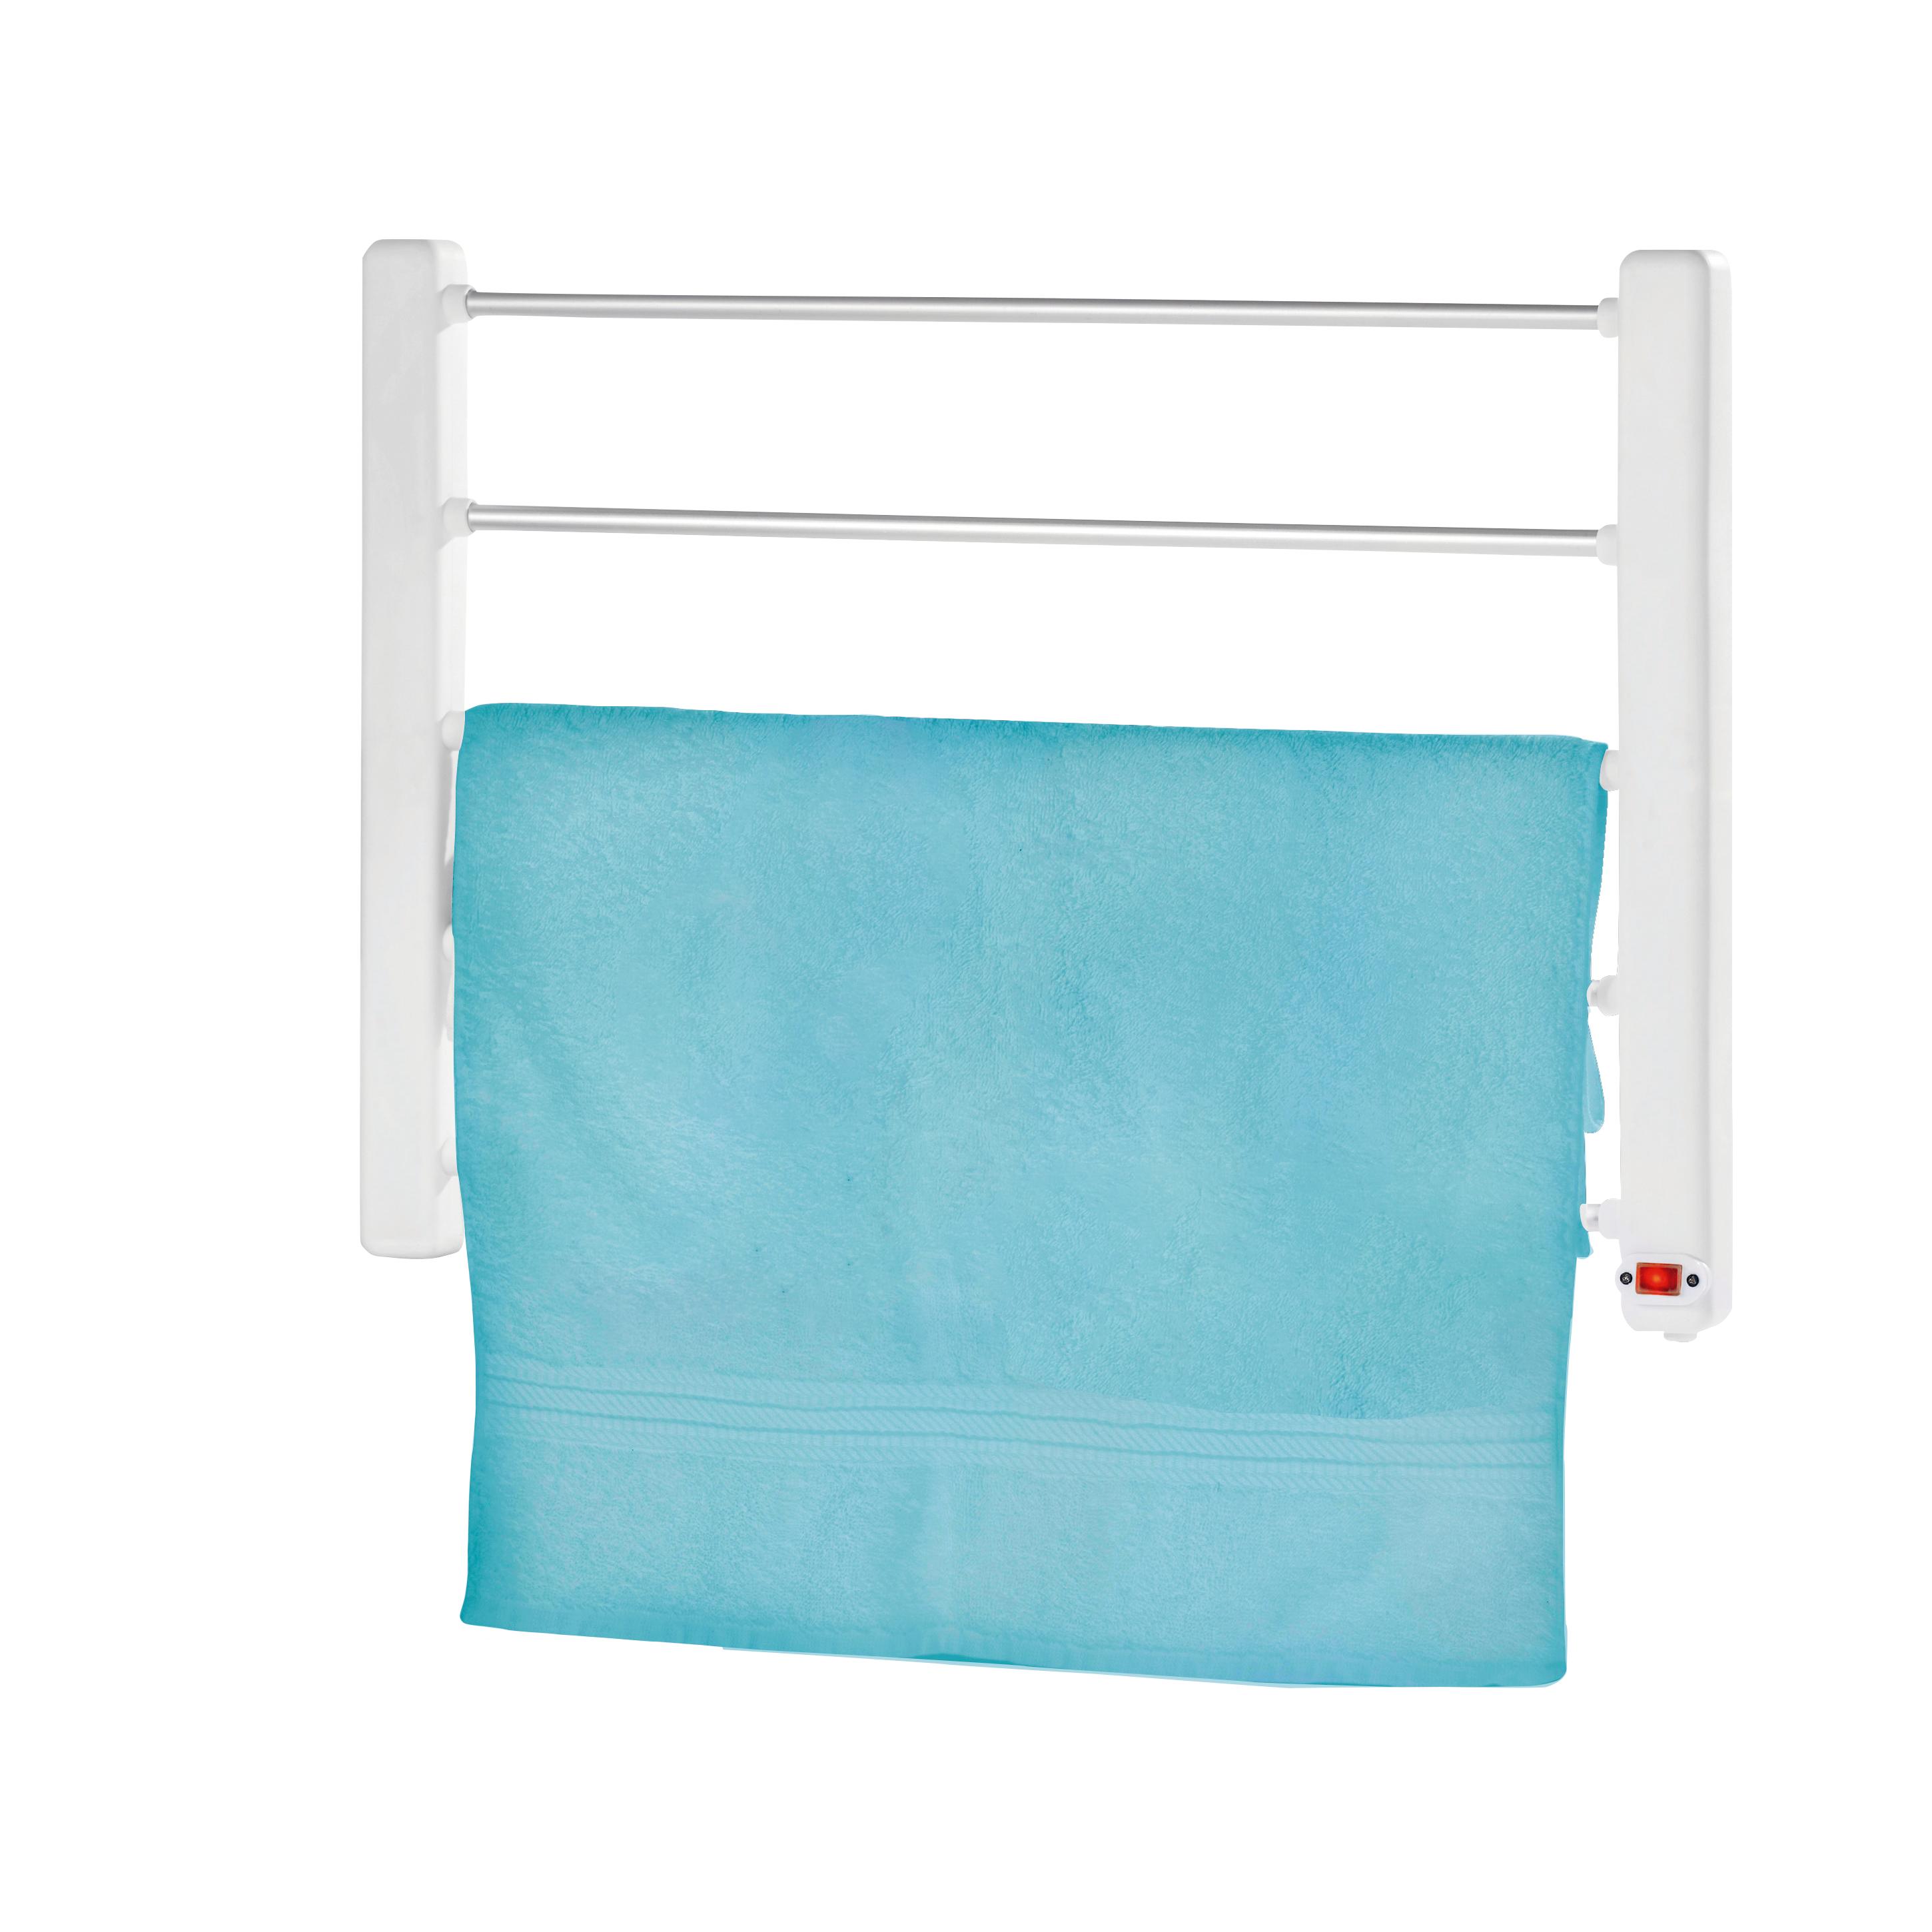 Secador de toallas con pantalla Digital, toallero eléctrico con